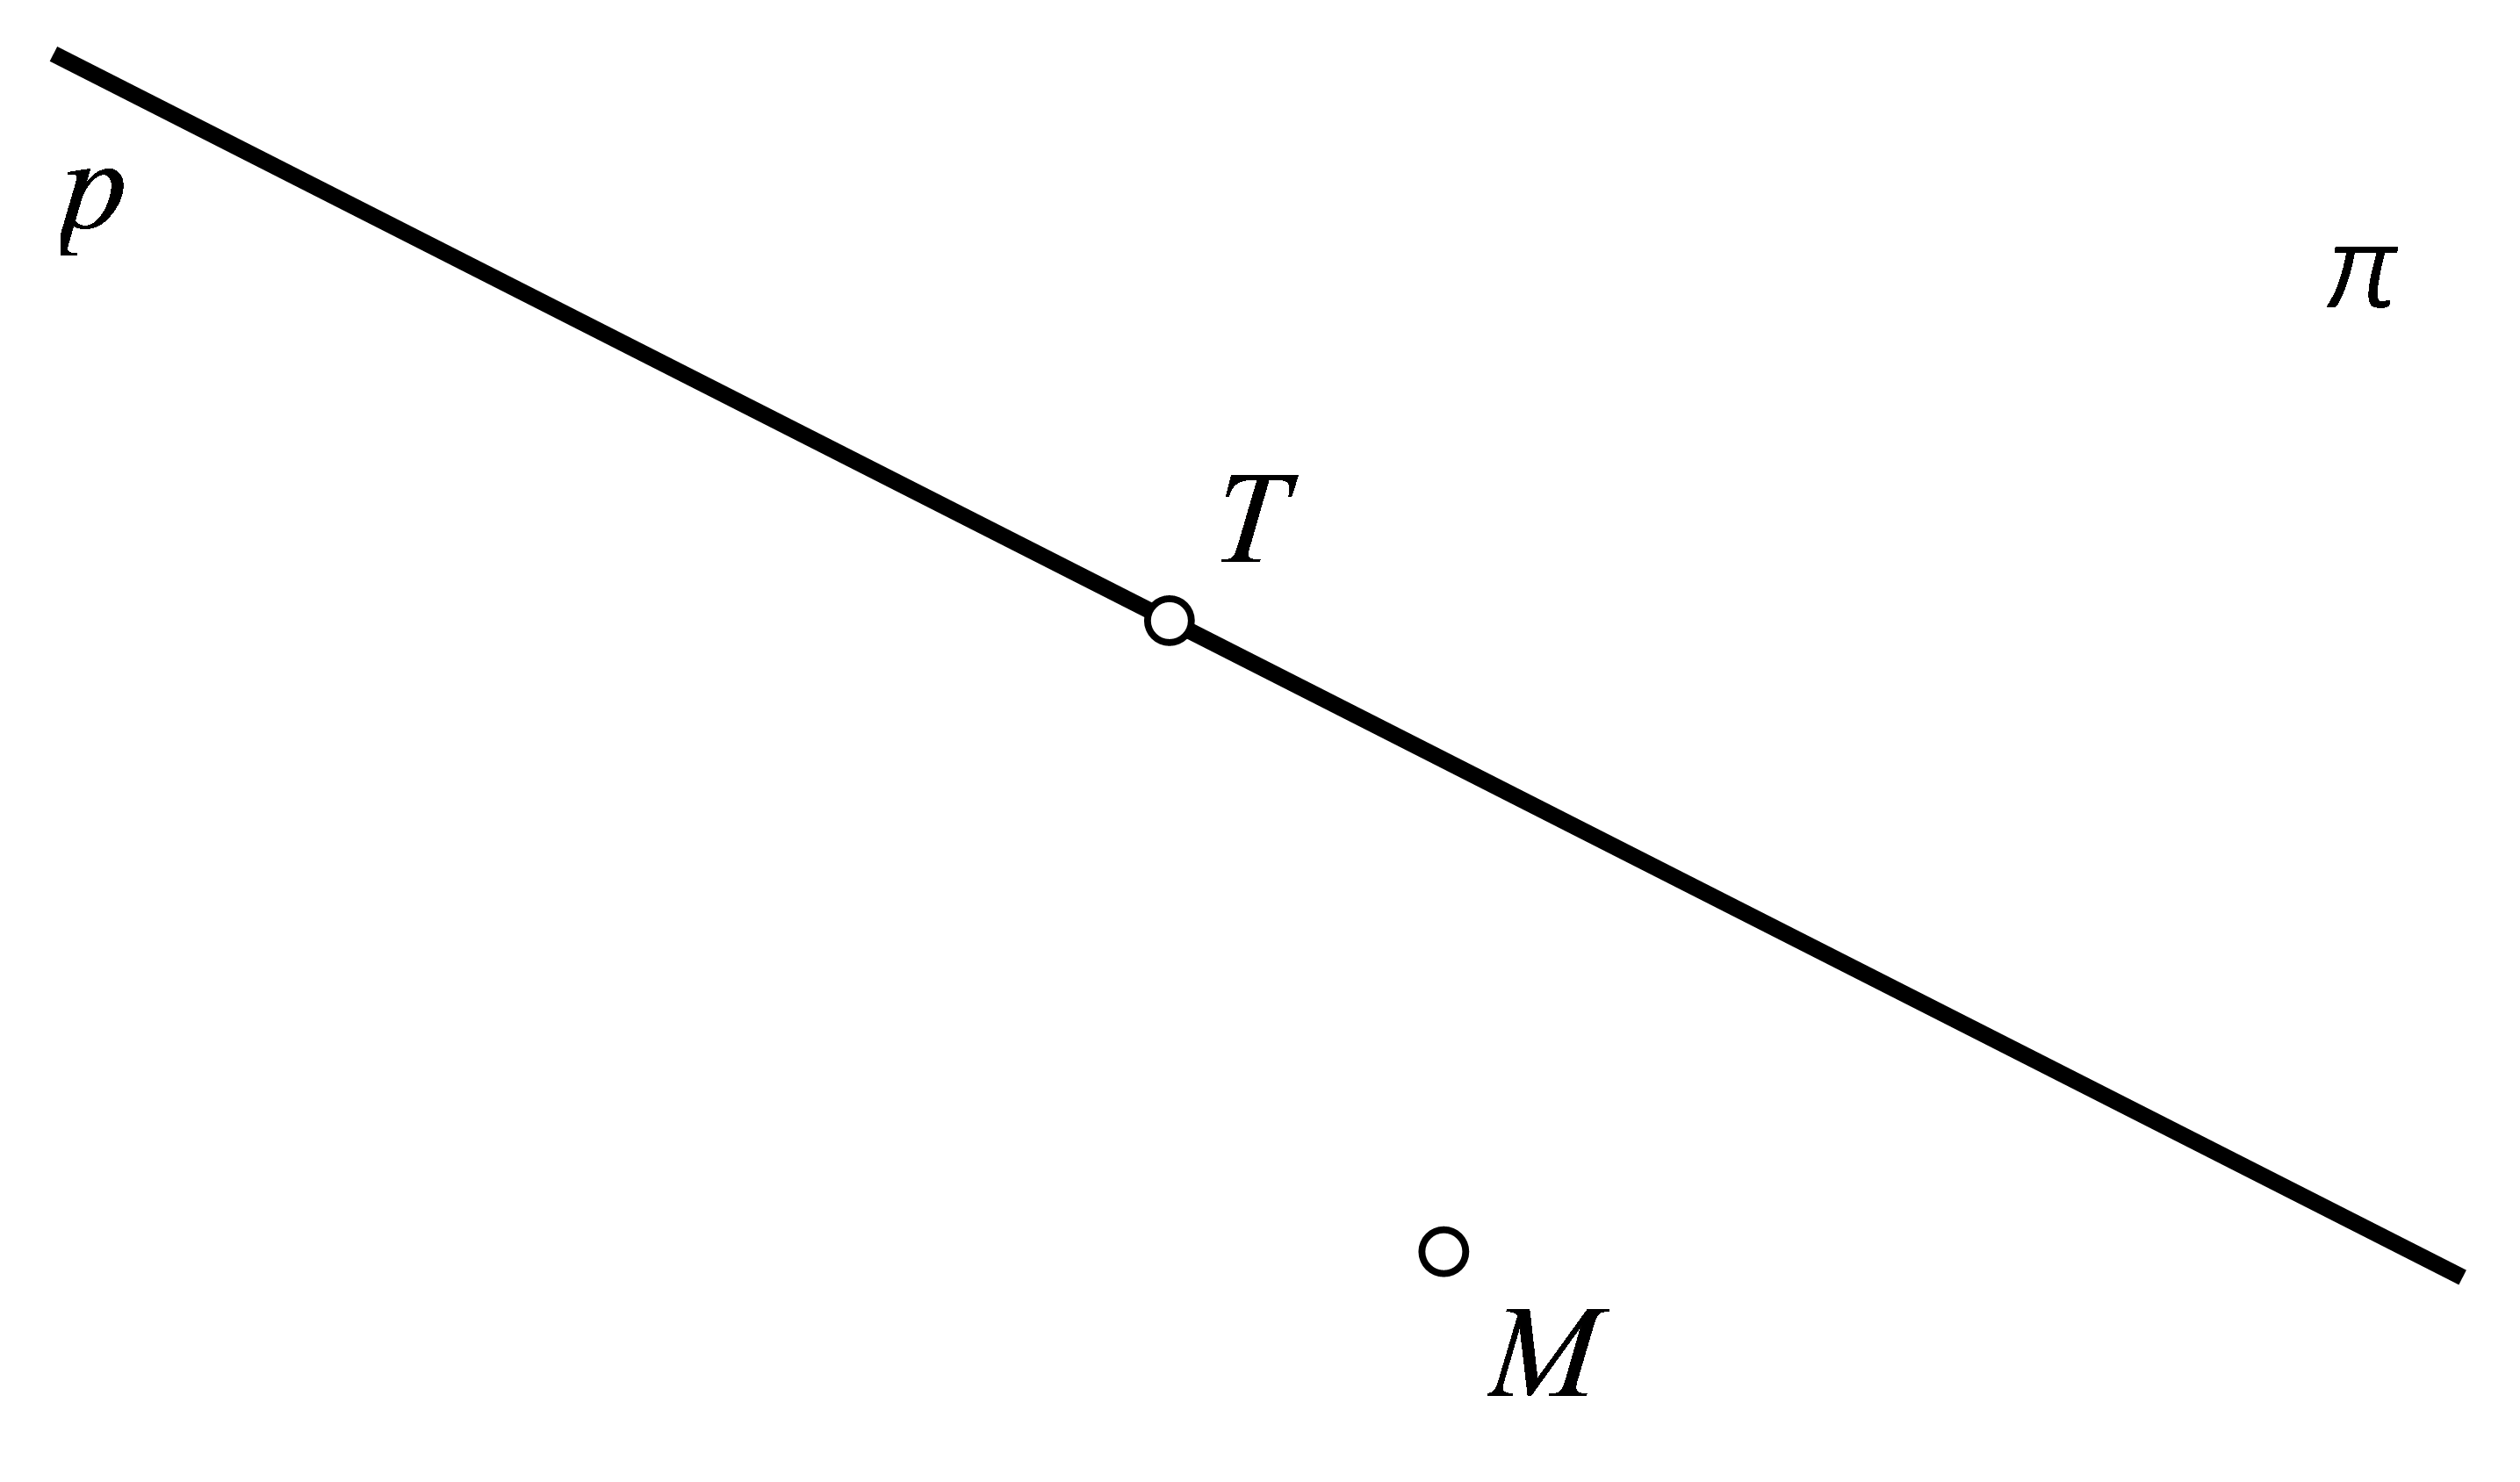 Slika prikazuje točke T i M u ravnini pi . Točka T pripada pravcu p, a točka M mu ne pripada.